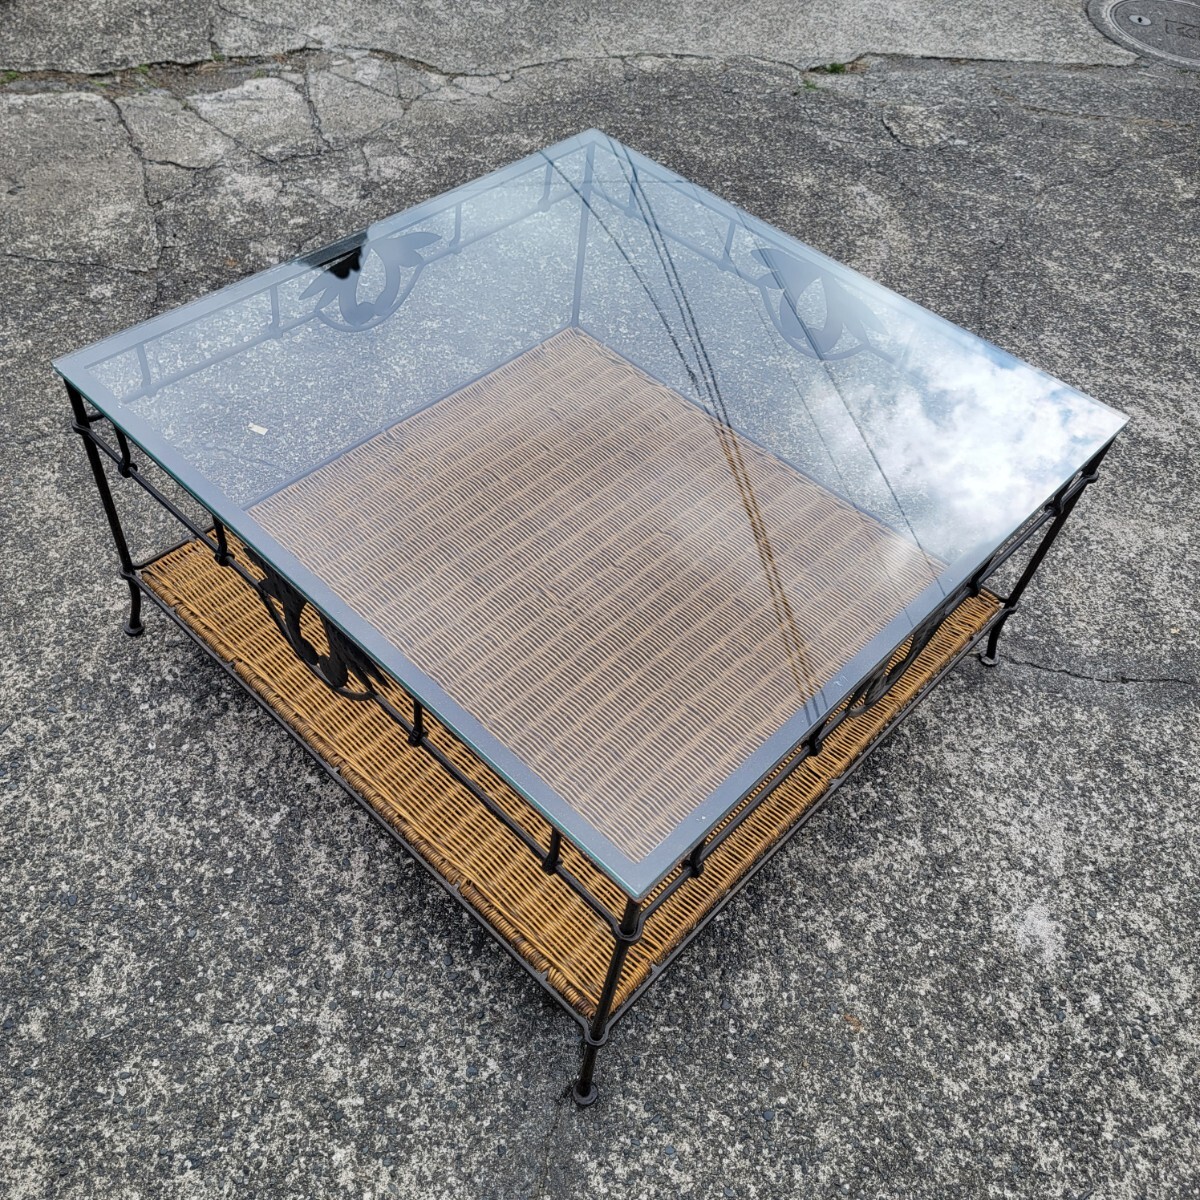  Europe Vintage железный ротанг стекло квадратное стол античный интерьер 900×900×480 регион ограничение получение приветствуется 